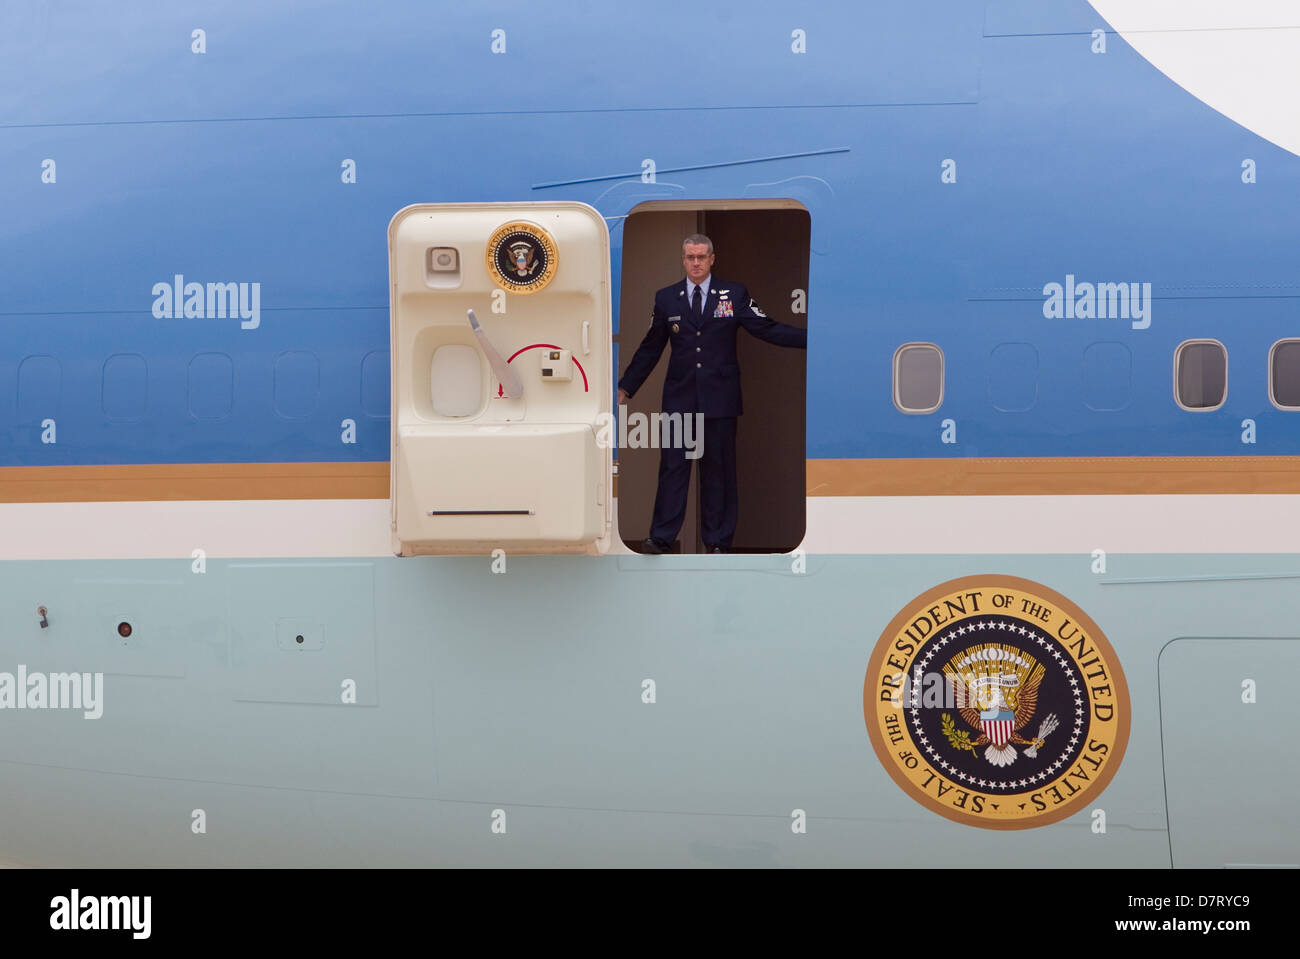 Air Force One, besuchen Sie die offizielle Flugzeug des Präsidenten der Vereinigten Staaten, in Austin, Texas im Mai zu einem offiziellen Stockfoto